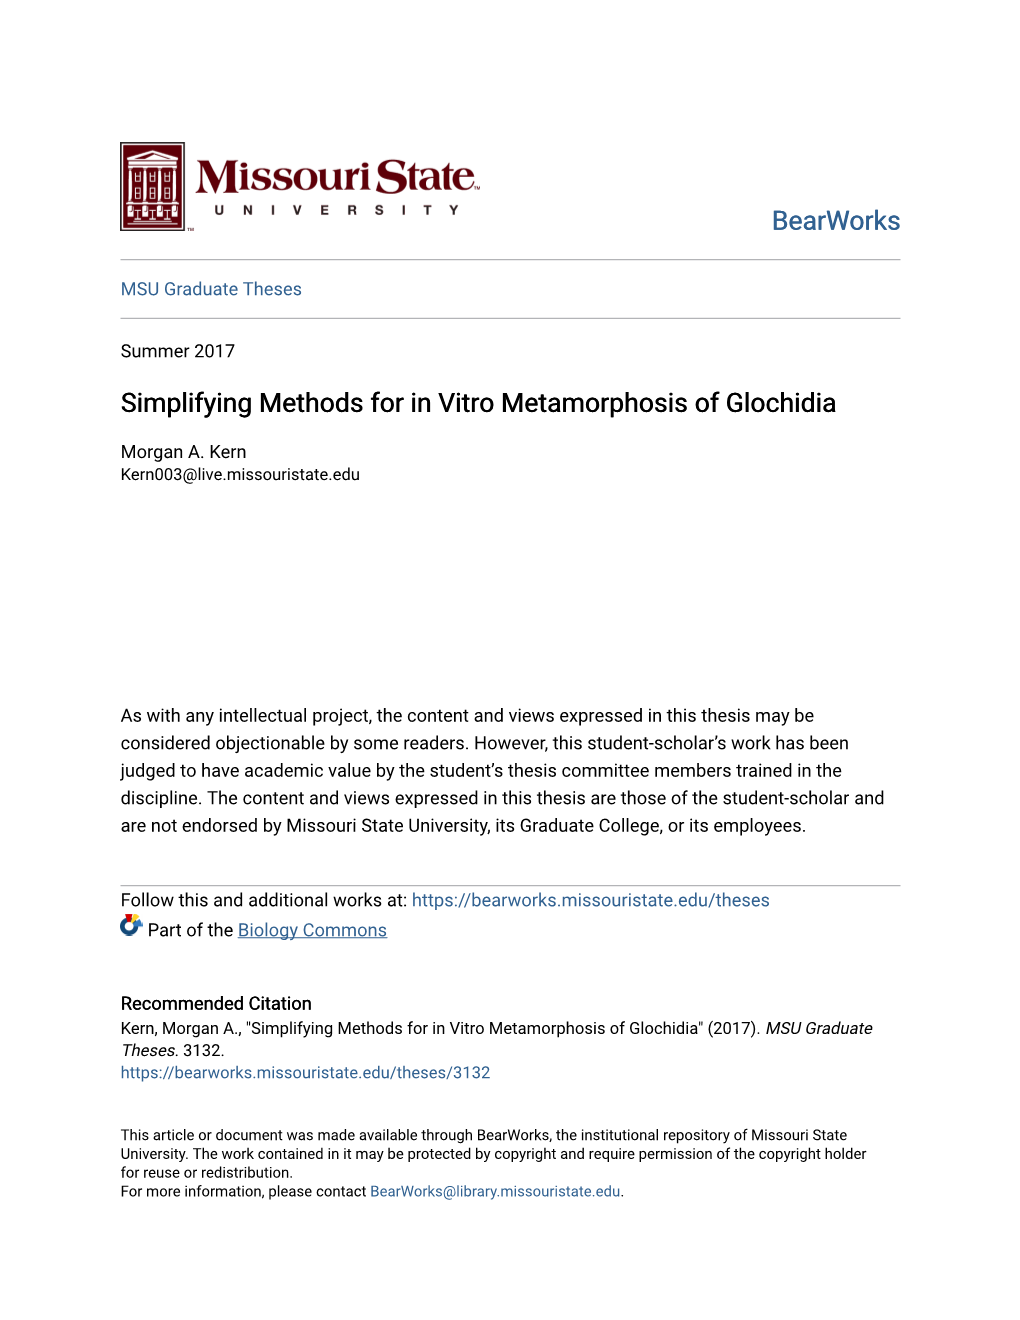 Simplifying Methods for in Vitro Metamorphosis of Glochidia